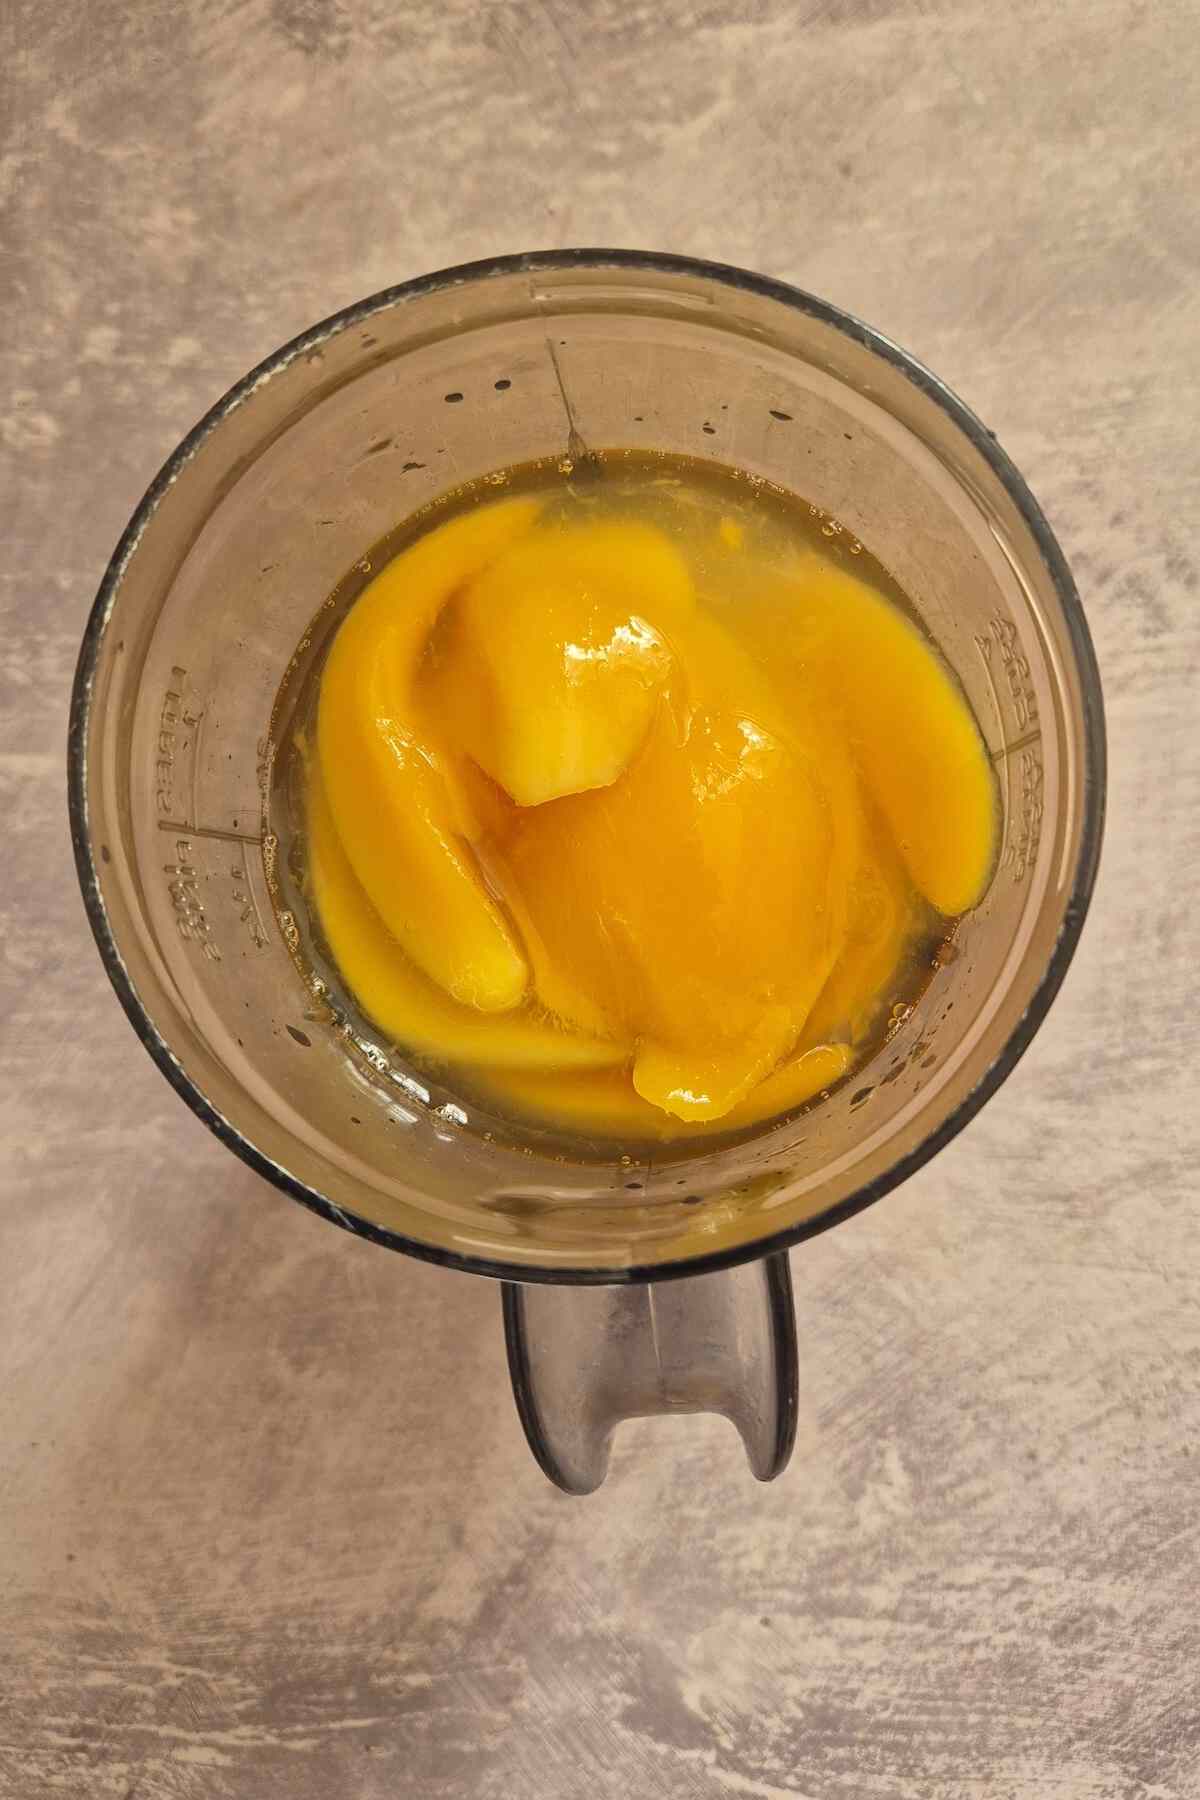 the mango sorbet ingredients inside a blender.